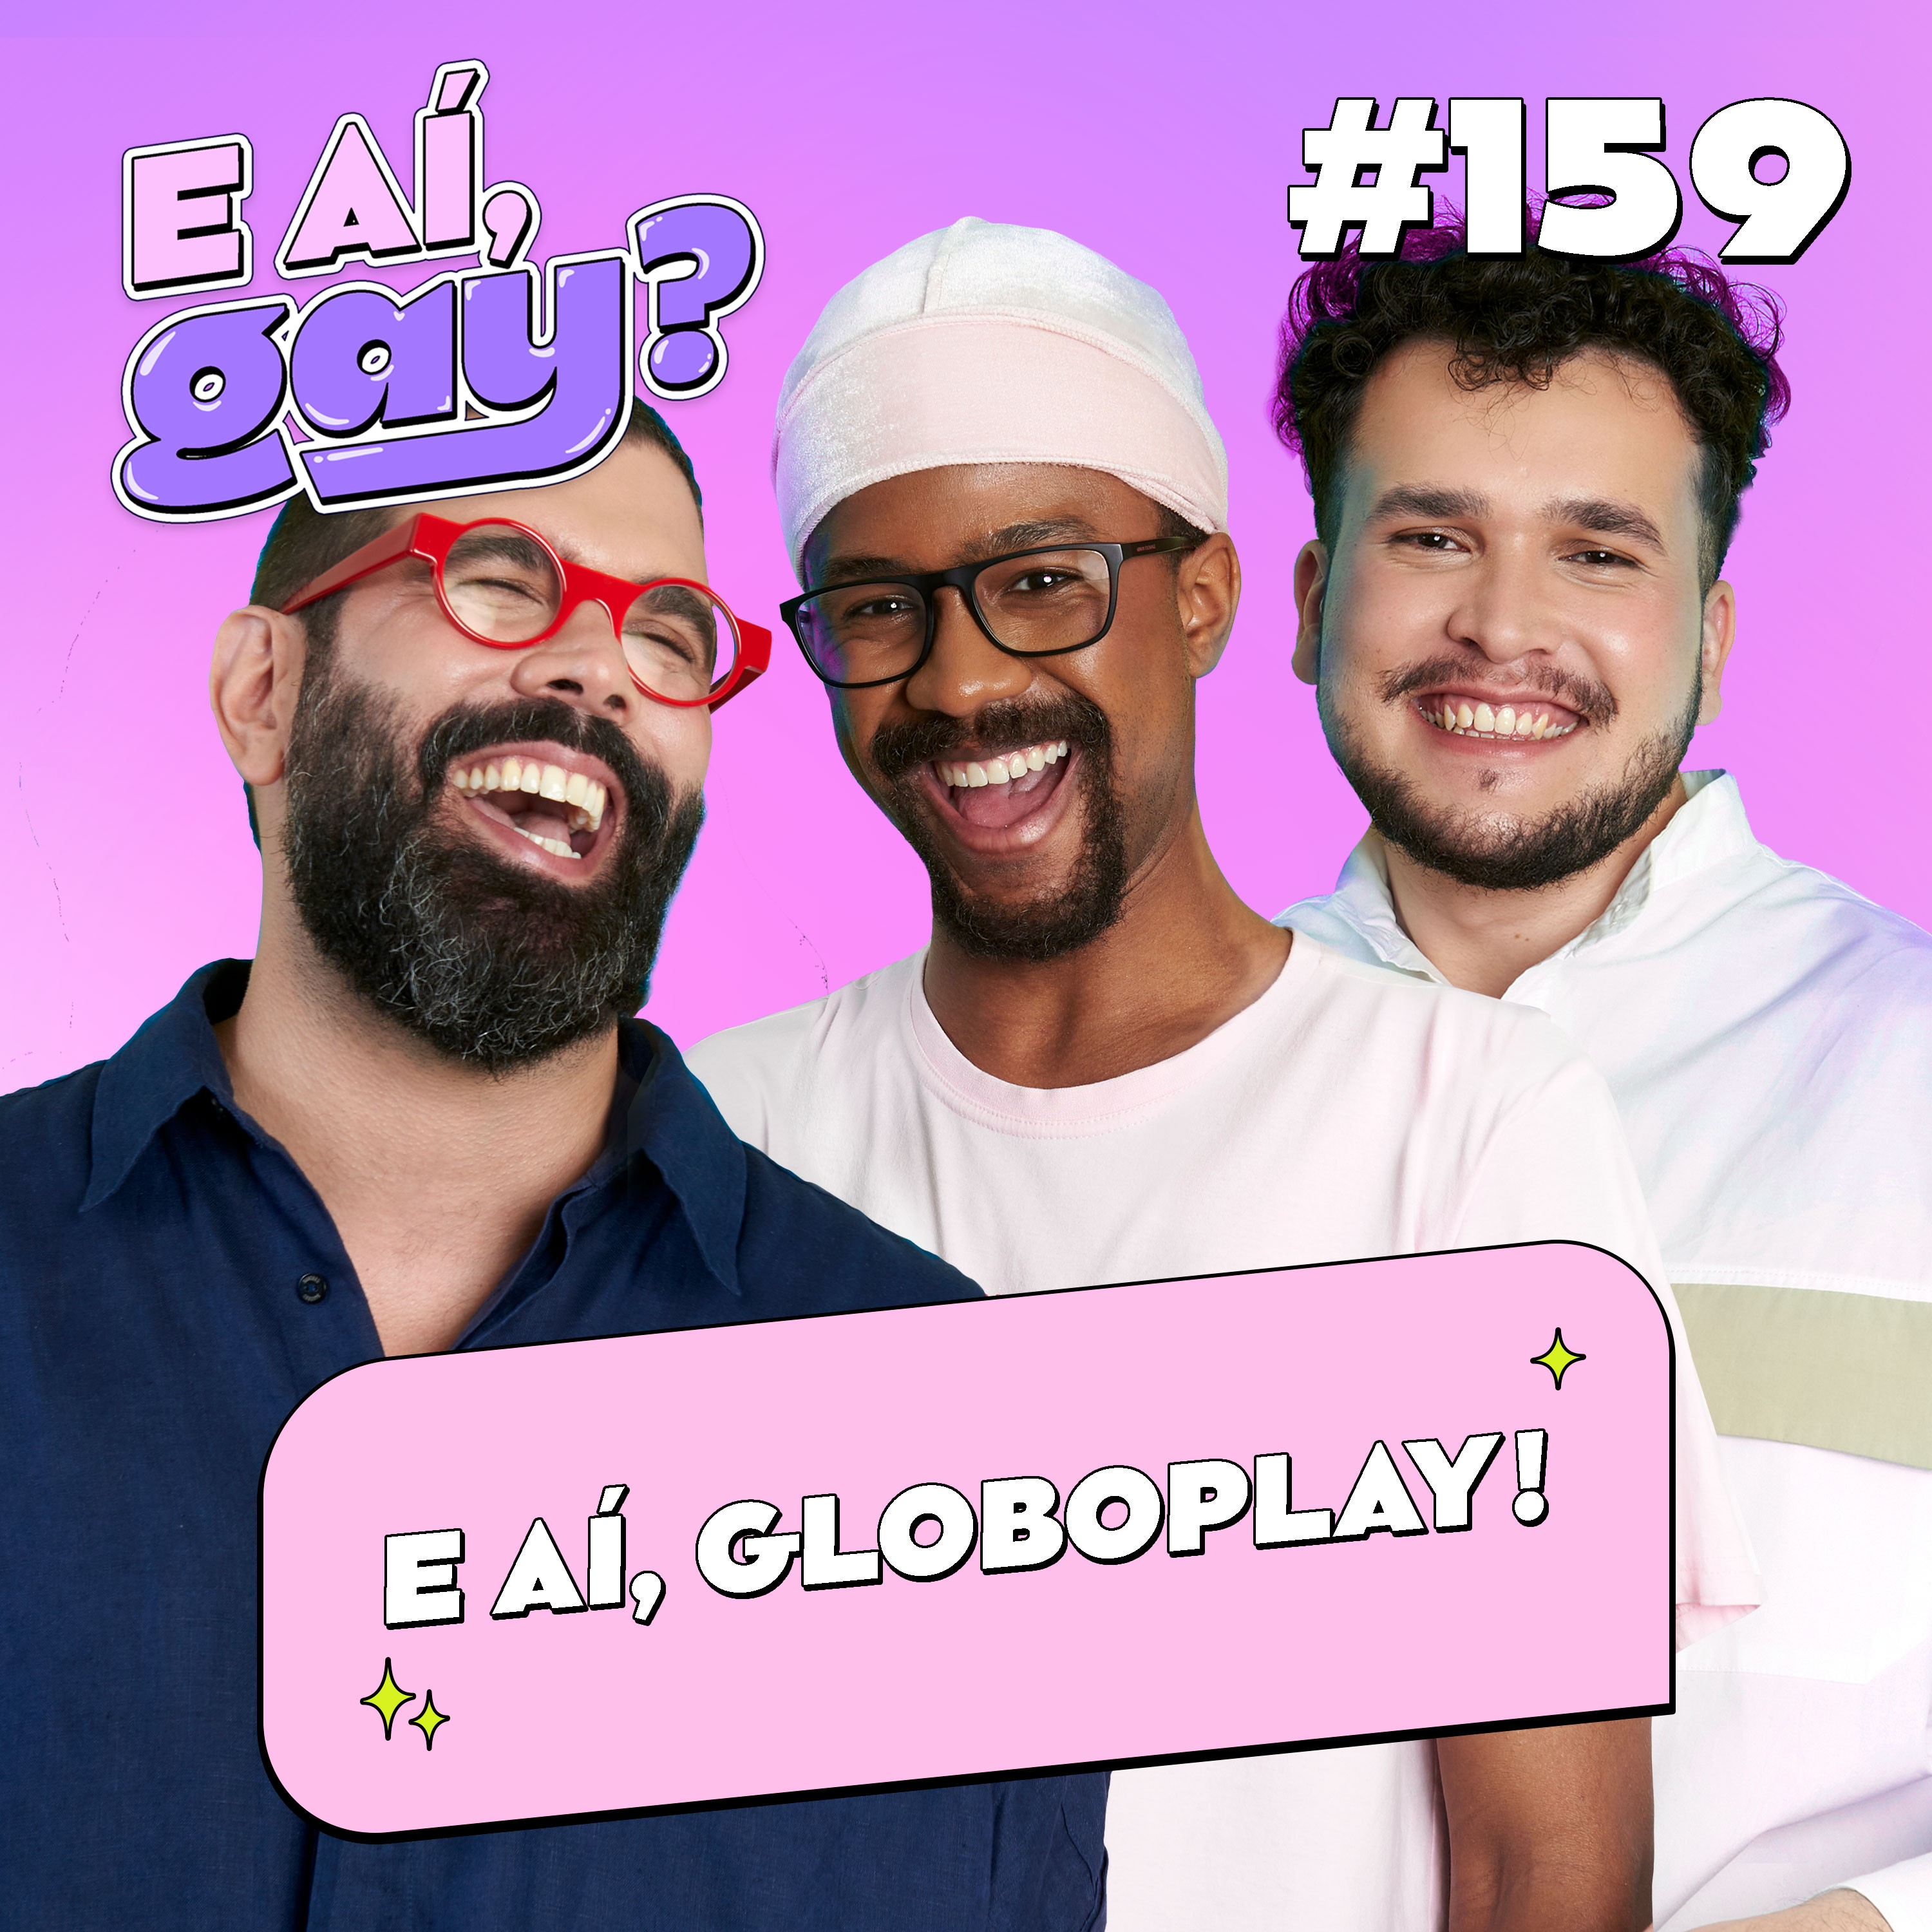 #159 - E aí, Globoplay!